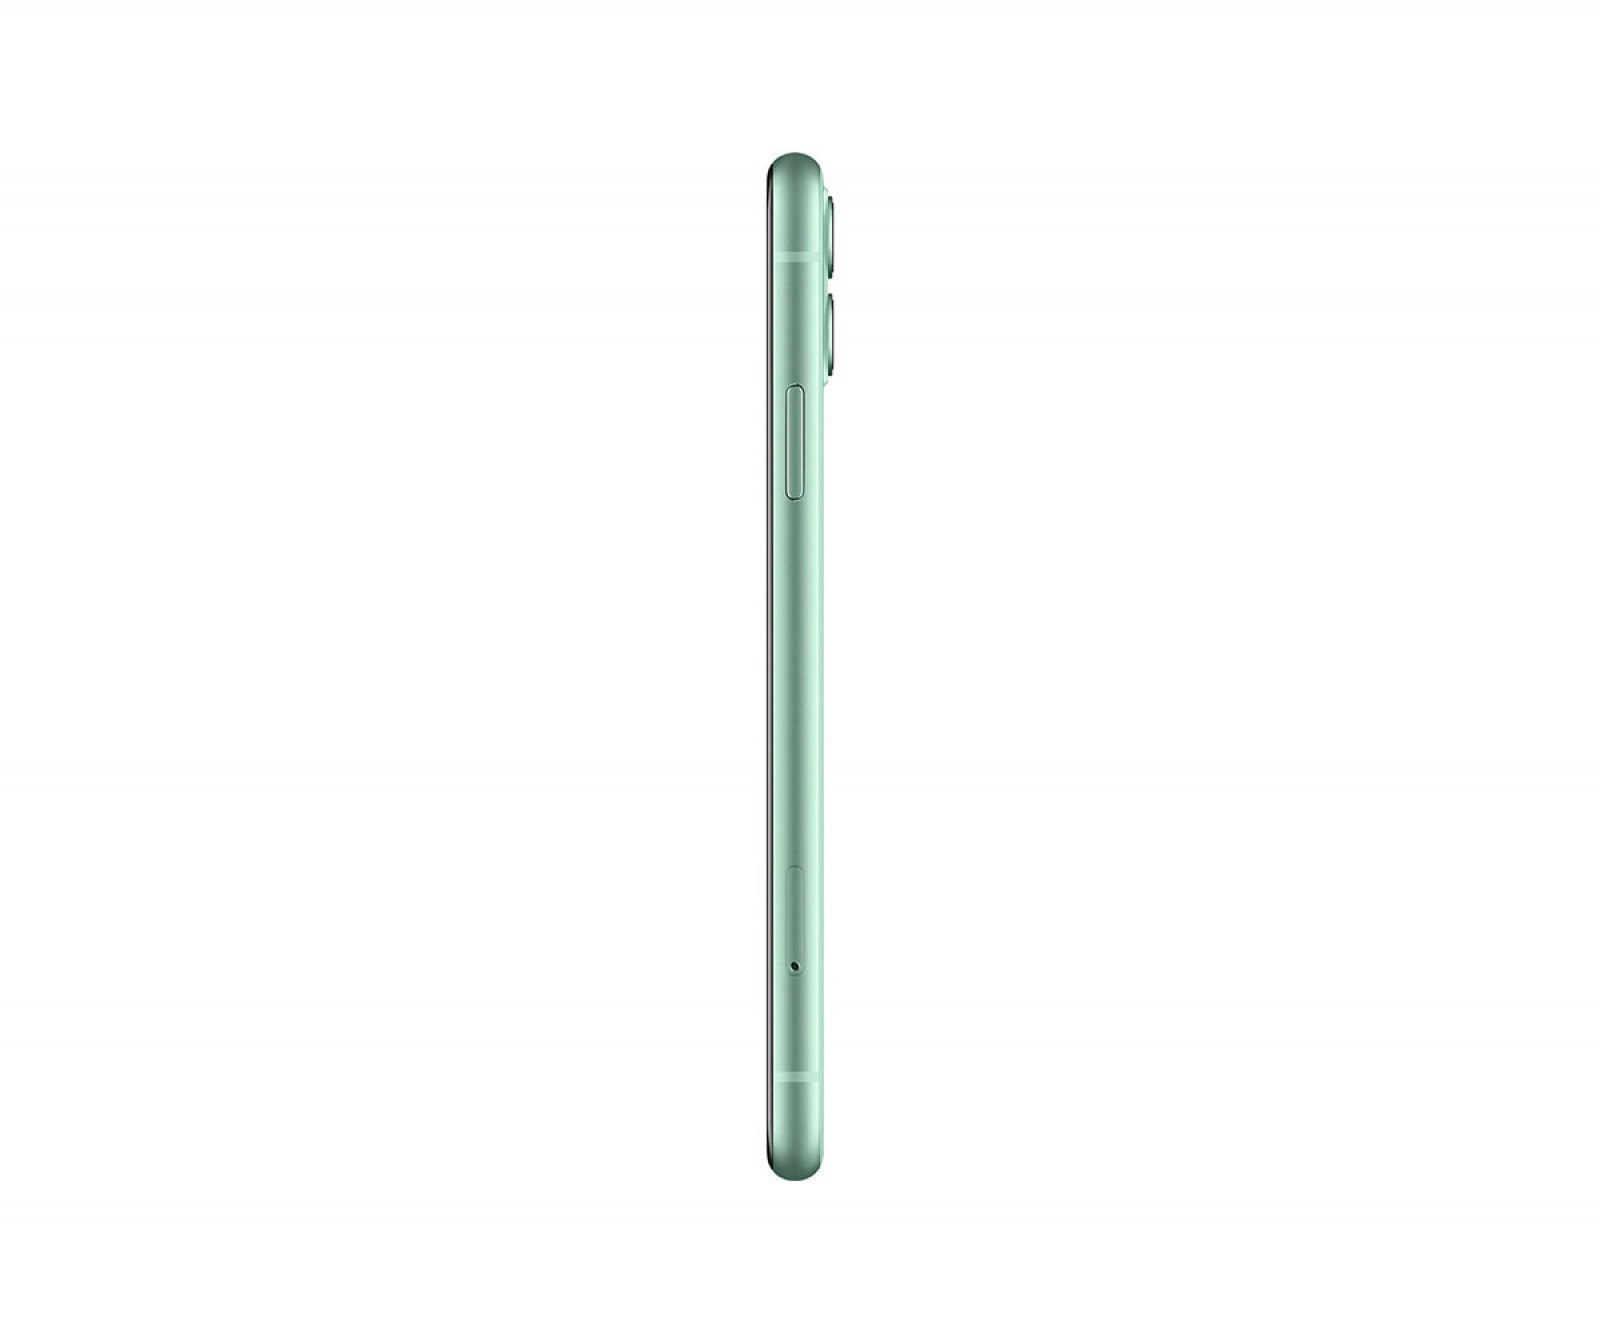 Apple iPhone 11 (64GB) Green